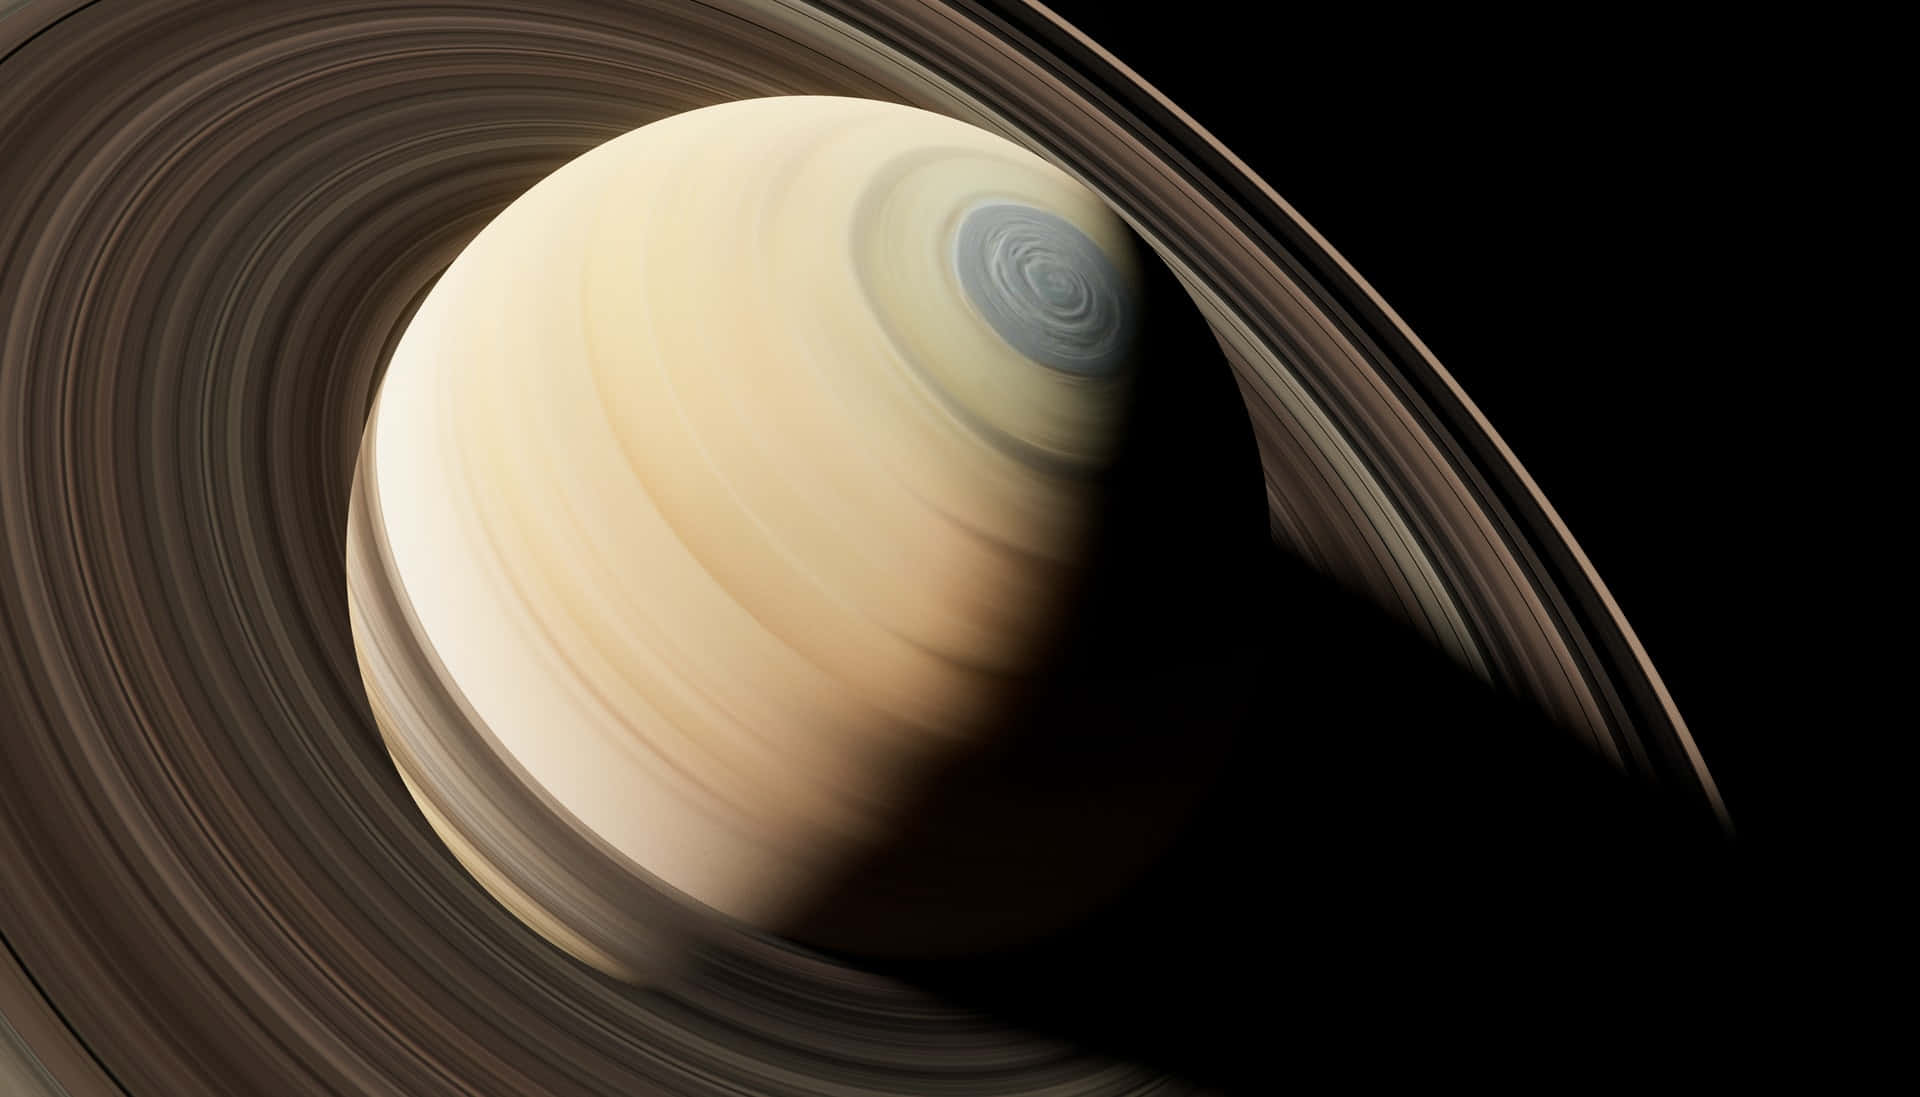 Osanéis De Saturno São Vistos Nesta Imagem